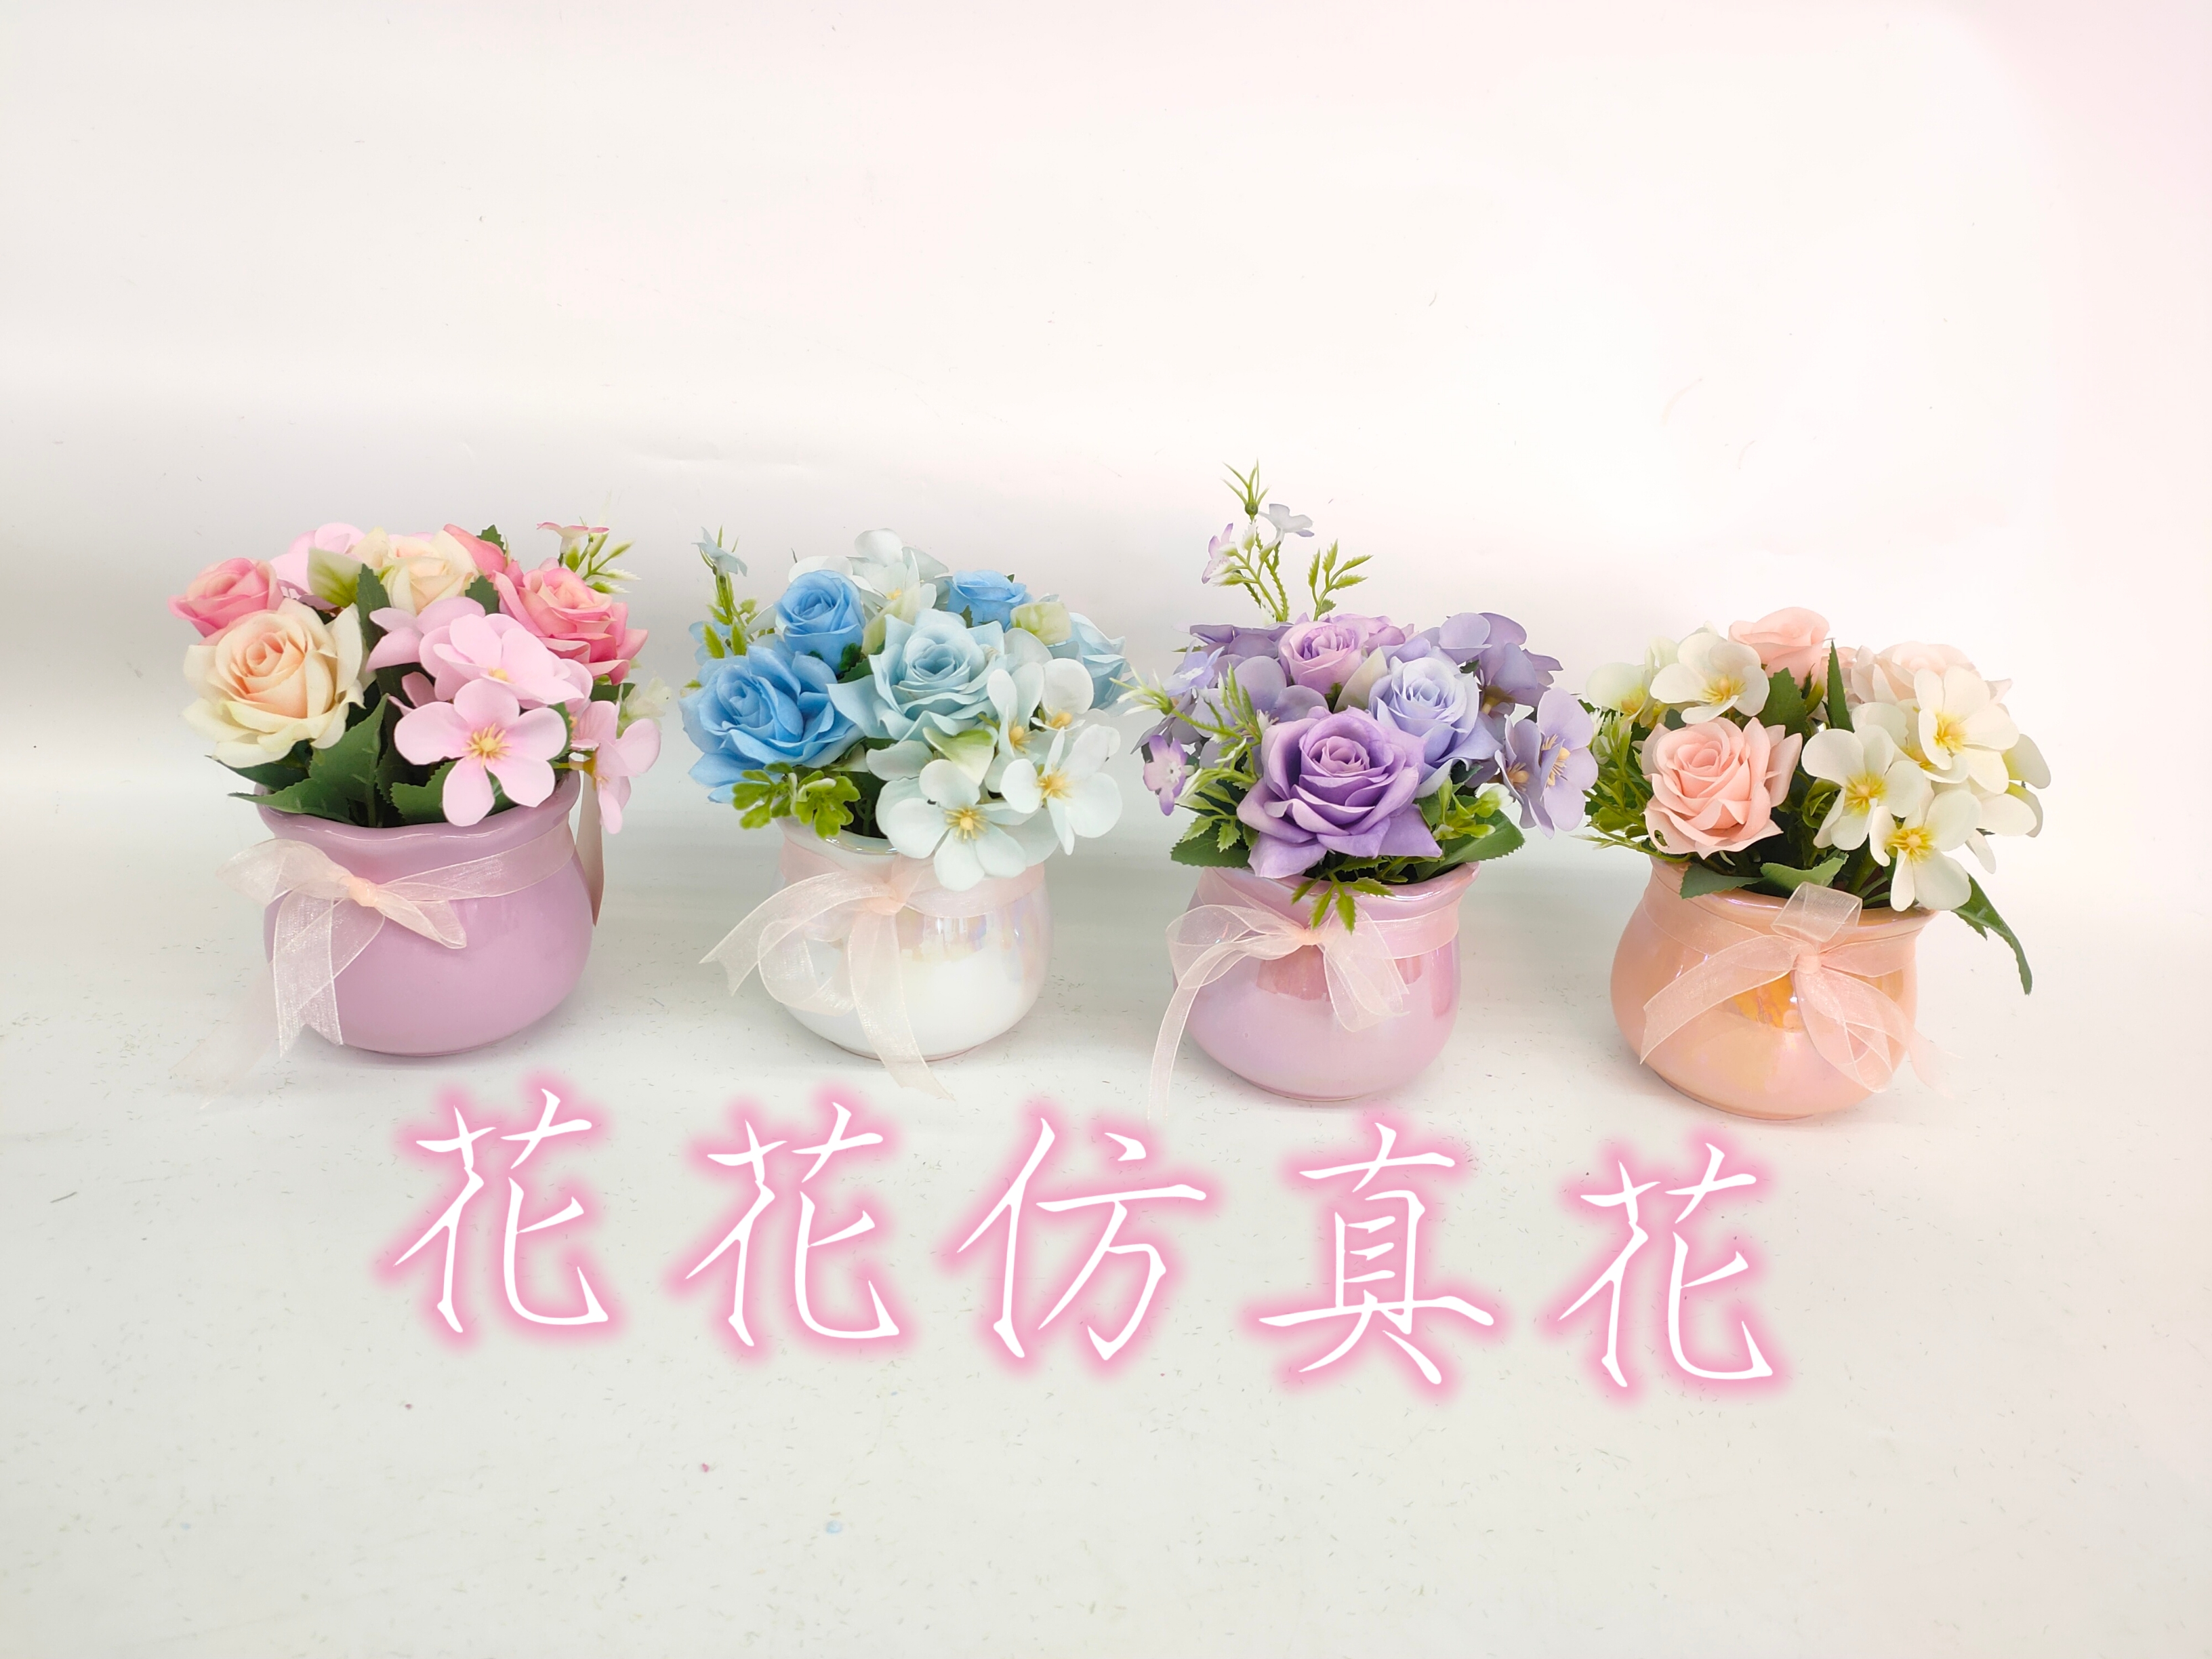 仿真花假花盆景陶瓷盆玫瑰花客厅餐桌办公桌等摆件装饰品